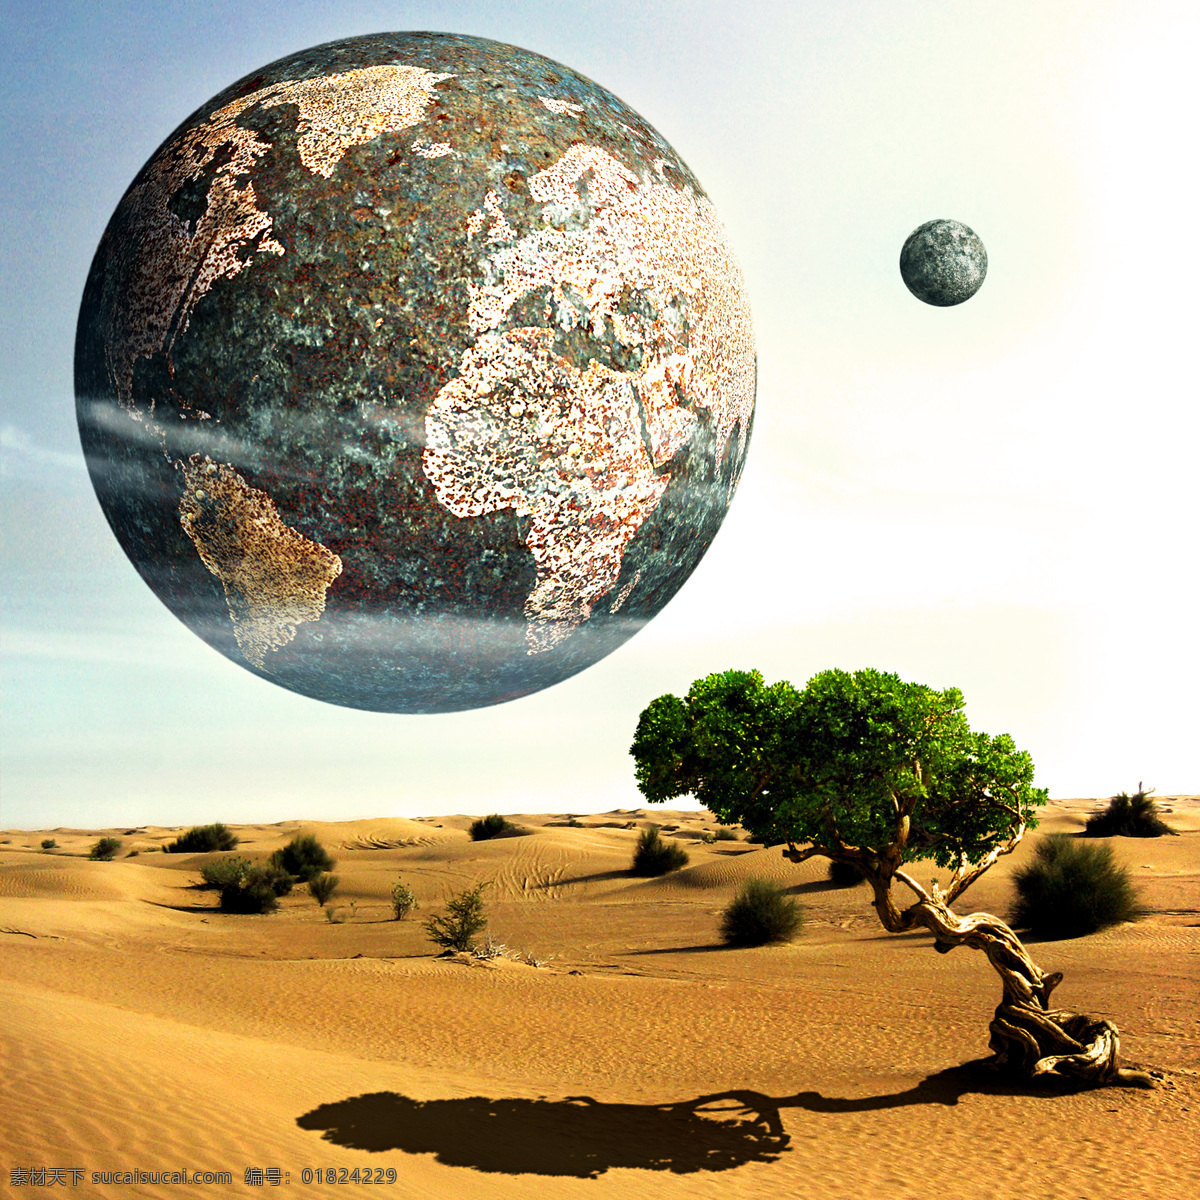 星球 地球 宇宙 云彩 奇幻 魔幻 星空 星际 大树 影子 黄沙 沙漠 科学研究 现代科技